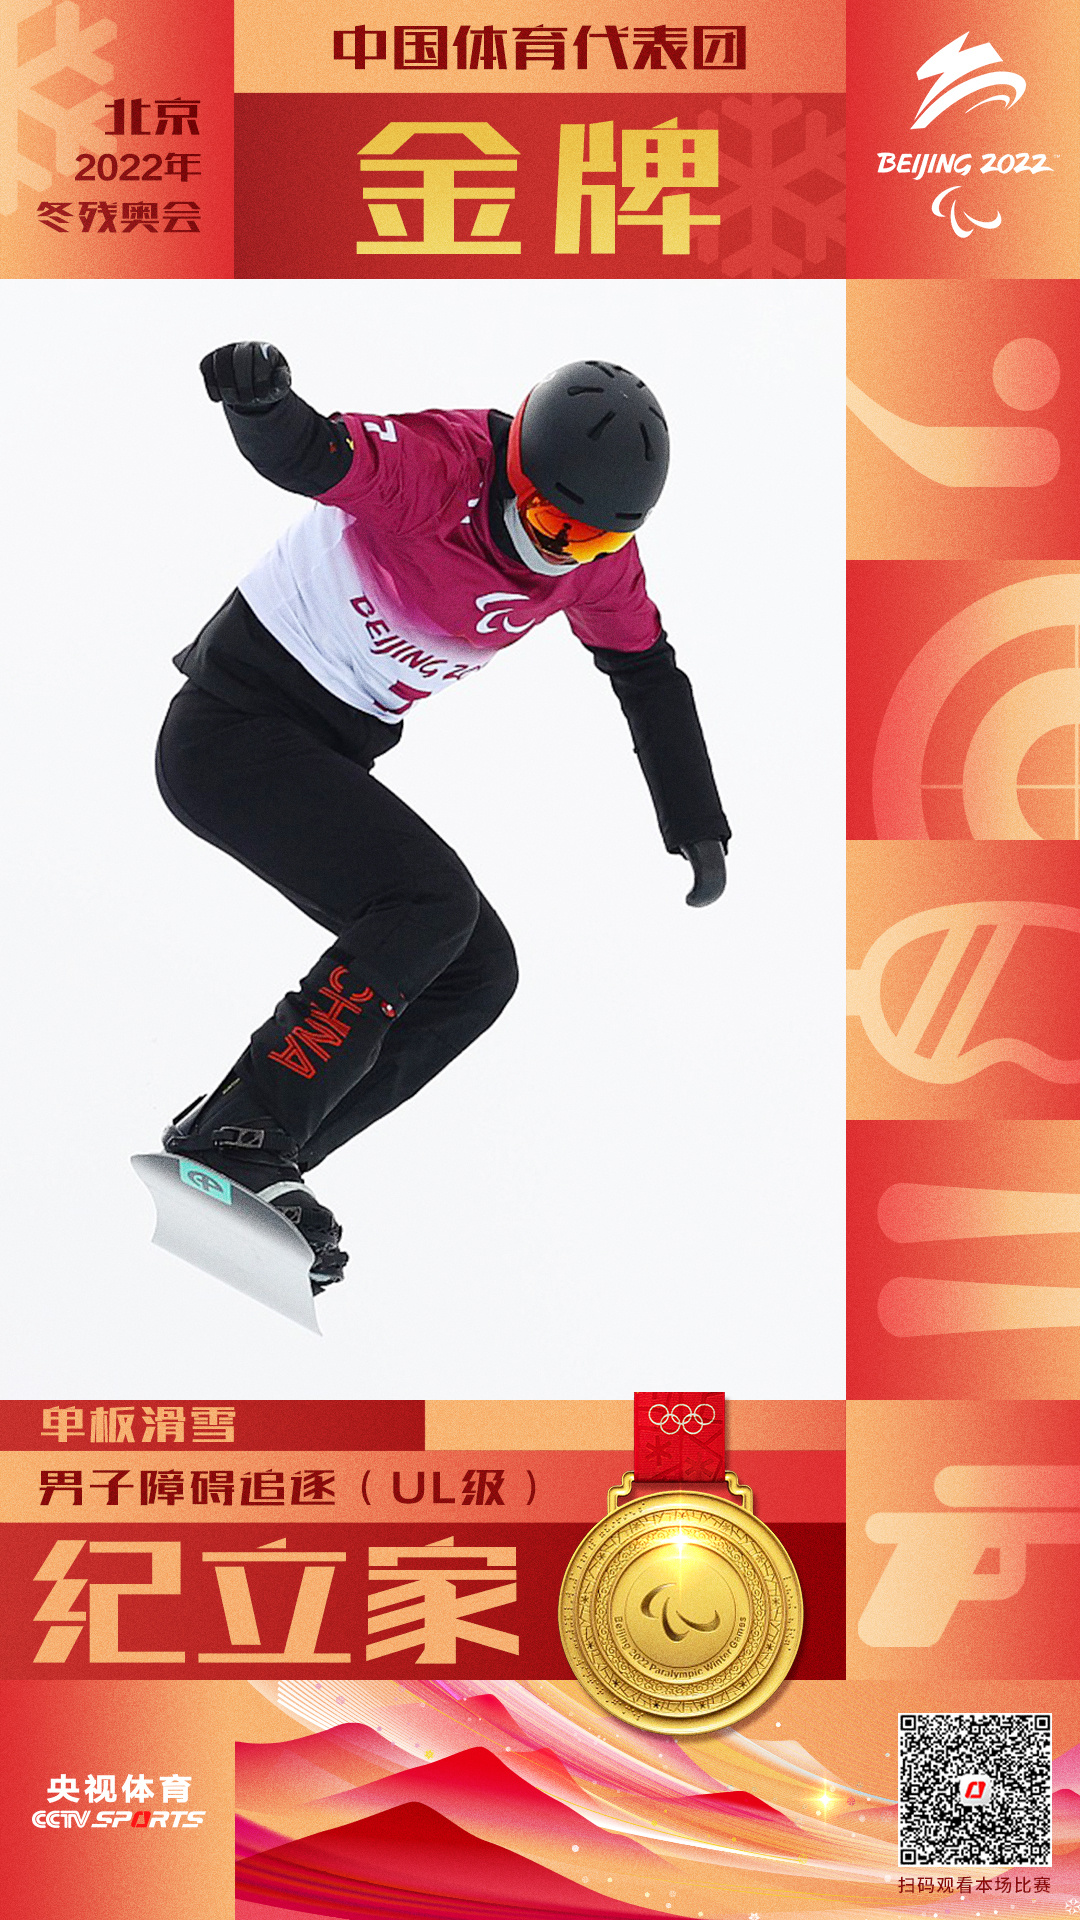 中国选手纪立家夺得单板滑雪男子障碍追逐（UL级）金牌